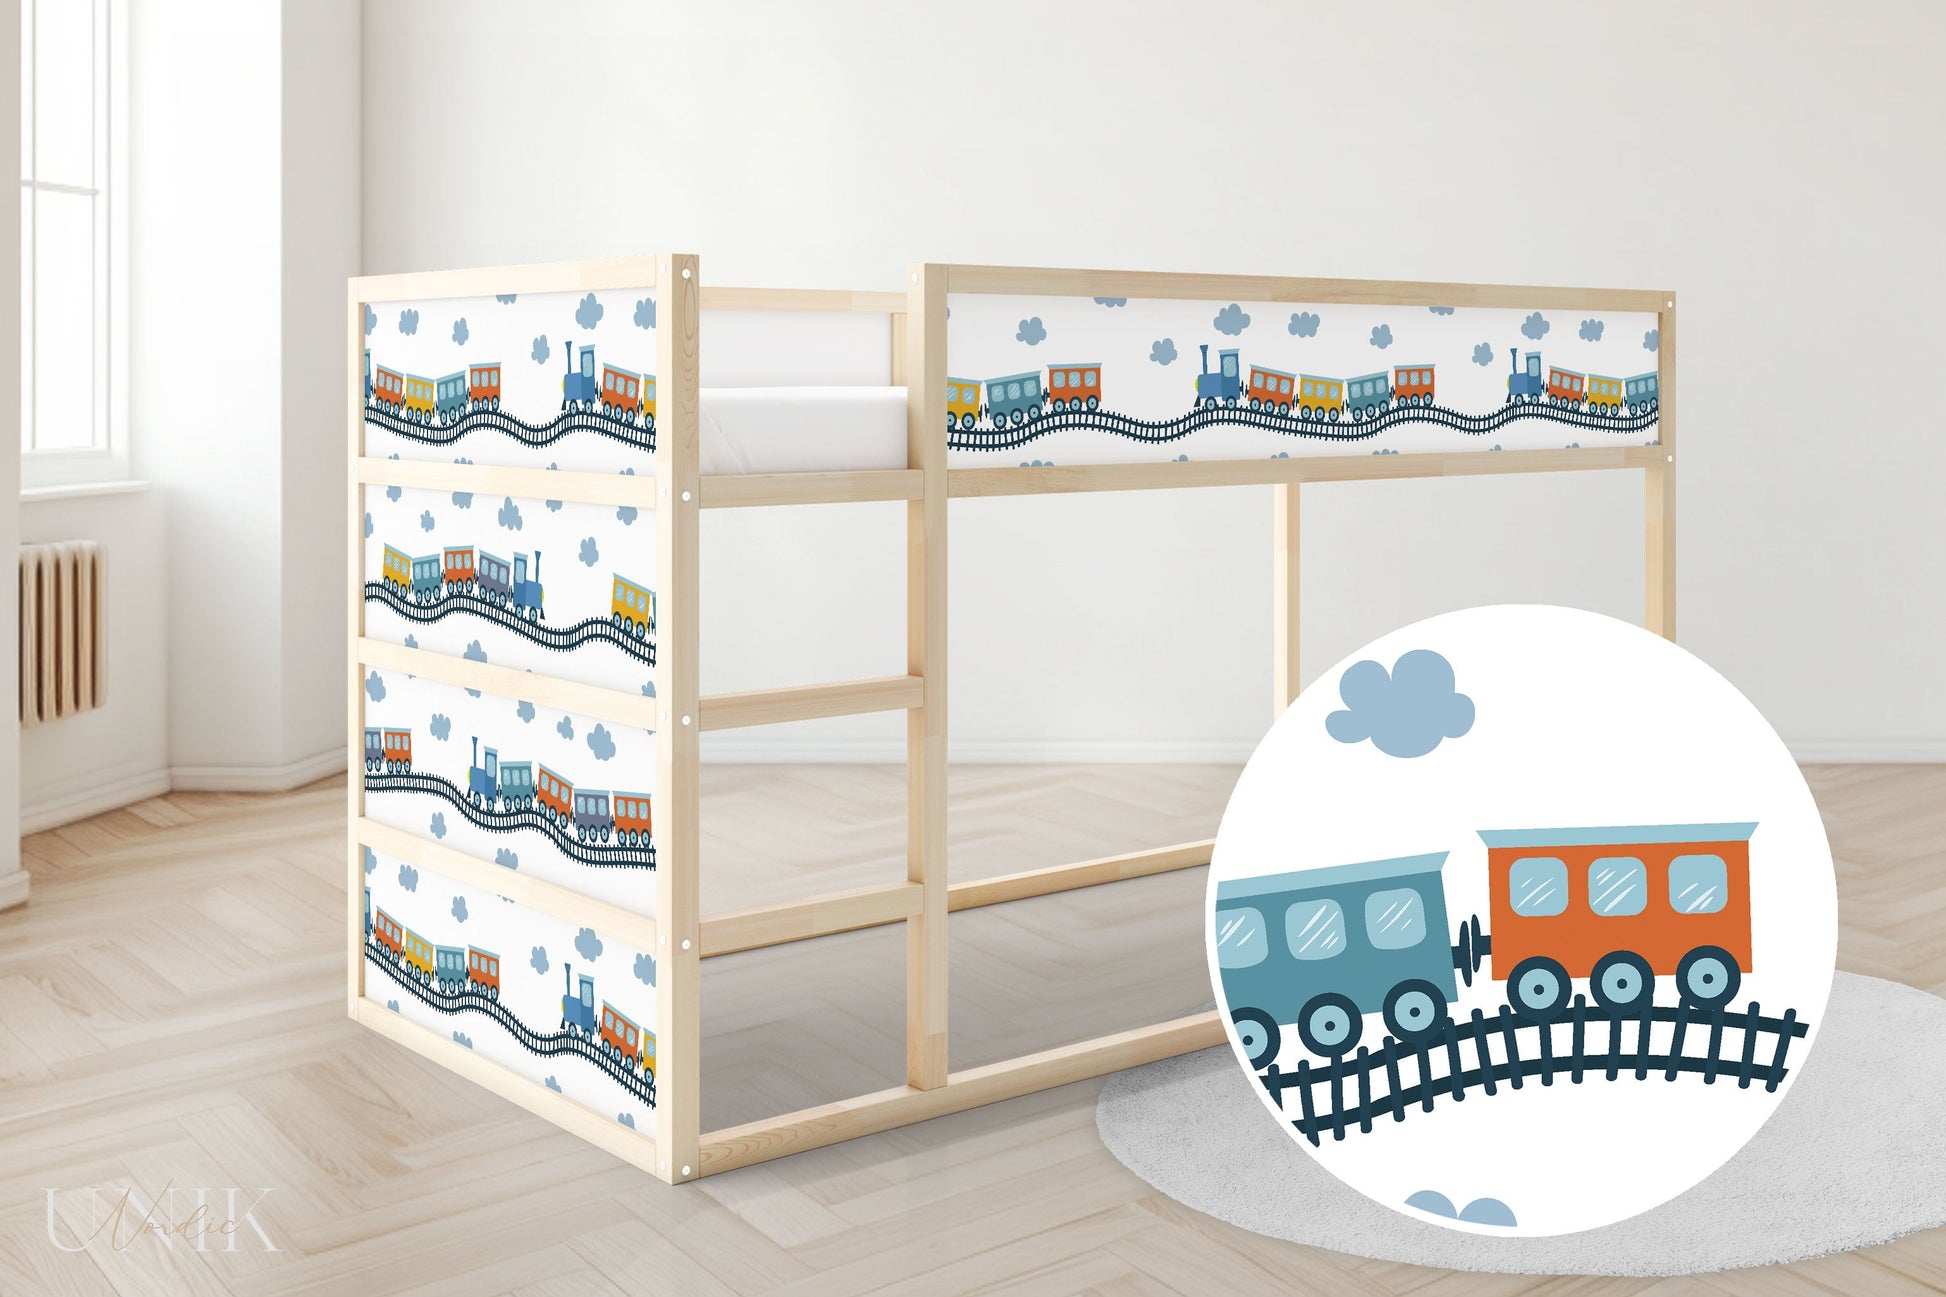 IKEA Kura Bett mit DIY Folien beklebt. Die Folien zeigen Züge.